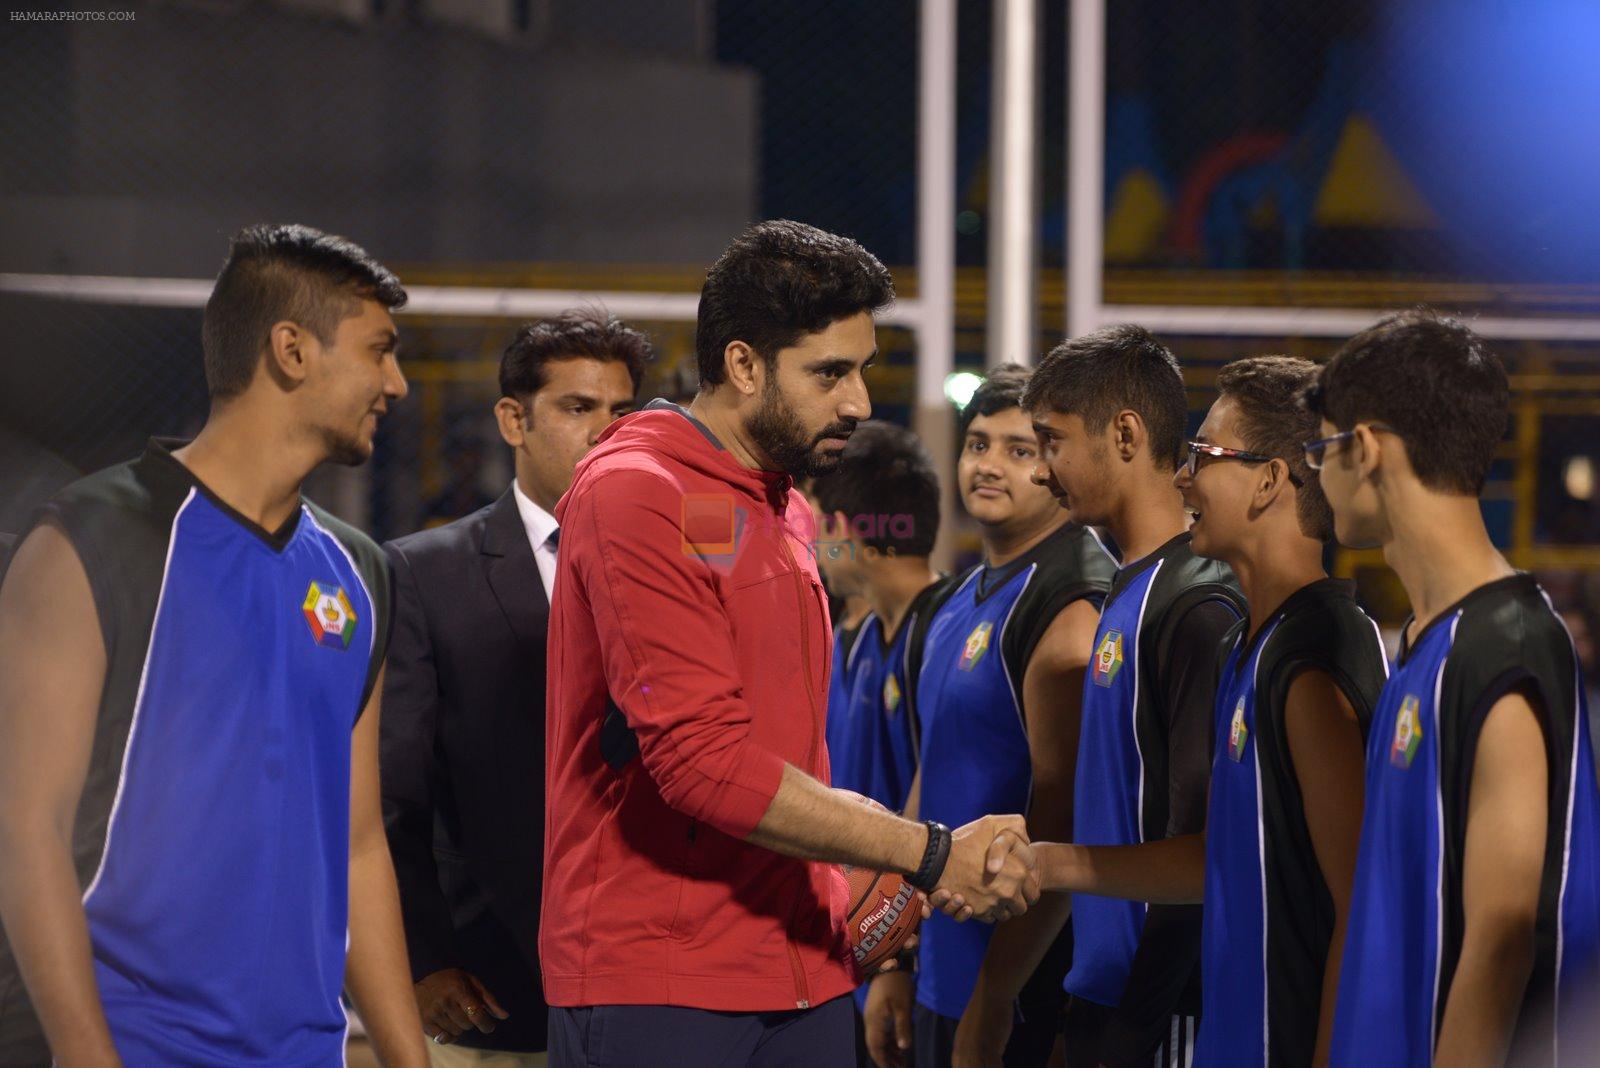 Abhishek Bachchan inaugurated Jamnabai Narsee School's World-class Multisport Court in Mumbai on 4th Jan 2015